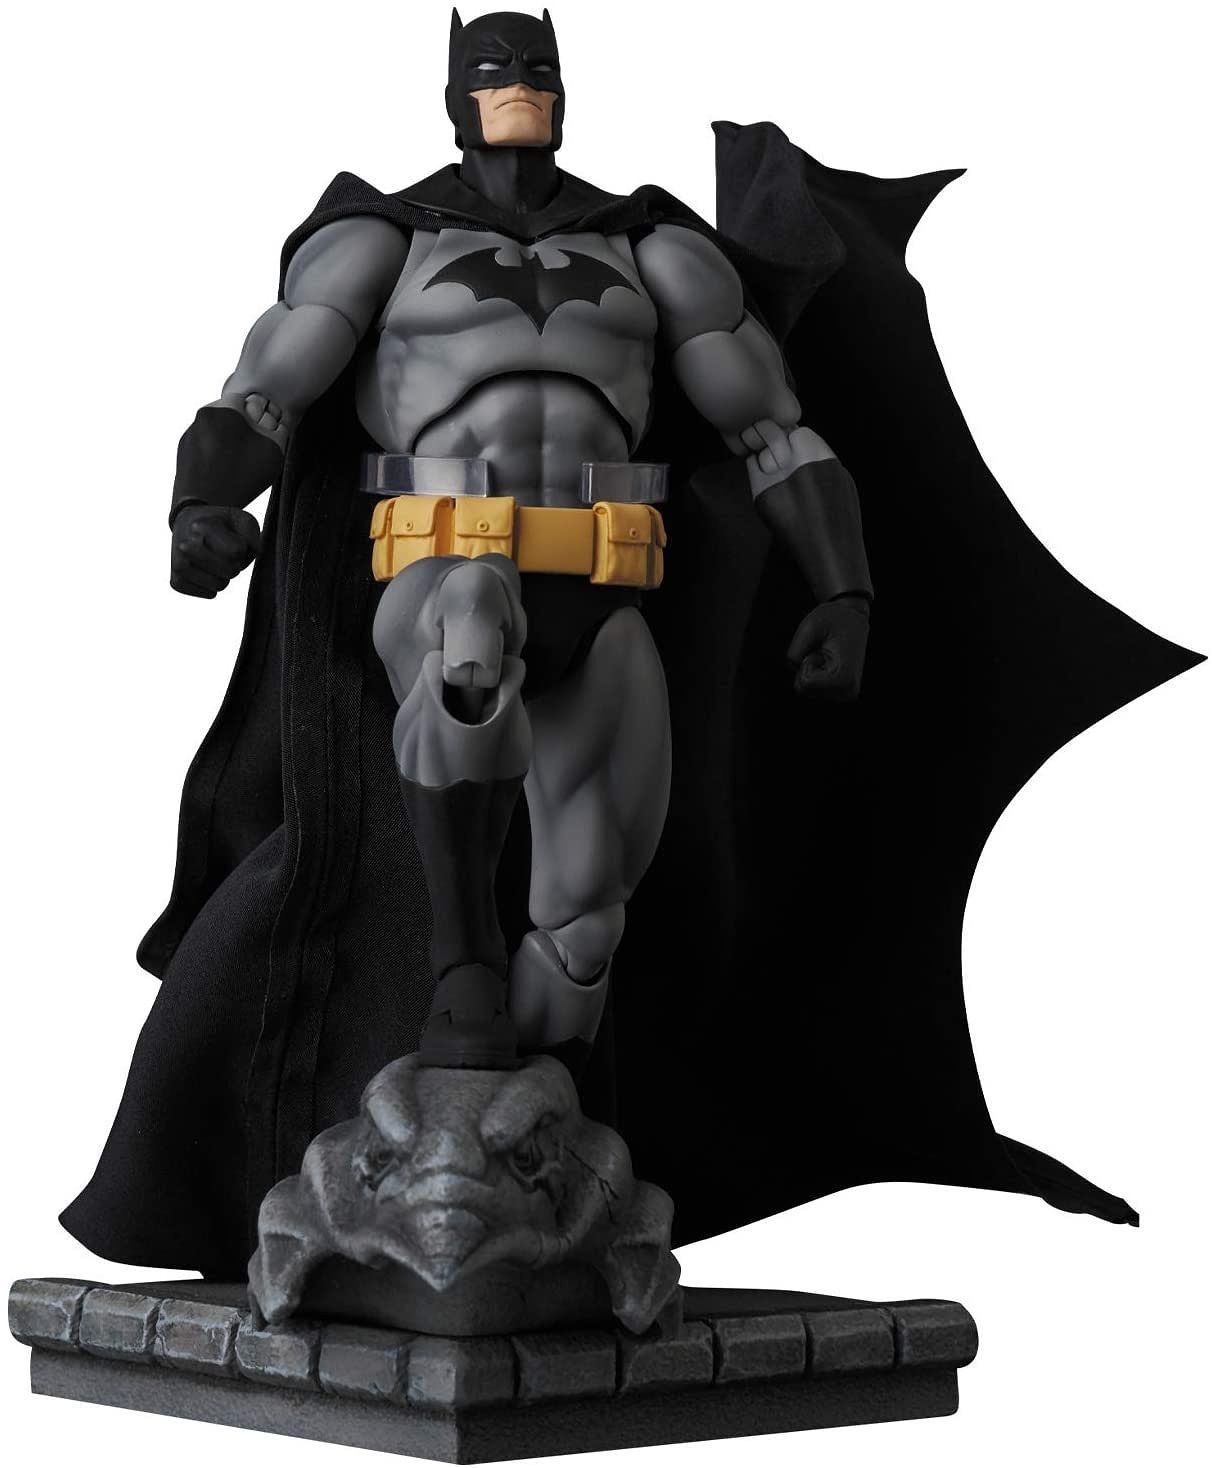 Medicom - MAFEX No. 126 - DC Comics - Batman: Hush - Batman (Black Ver.) - Marvelous Toys